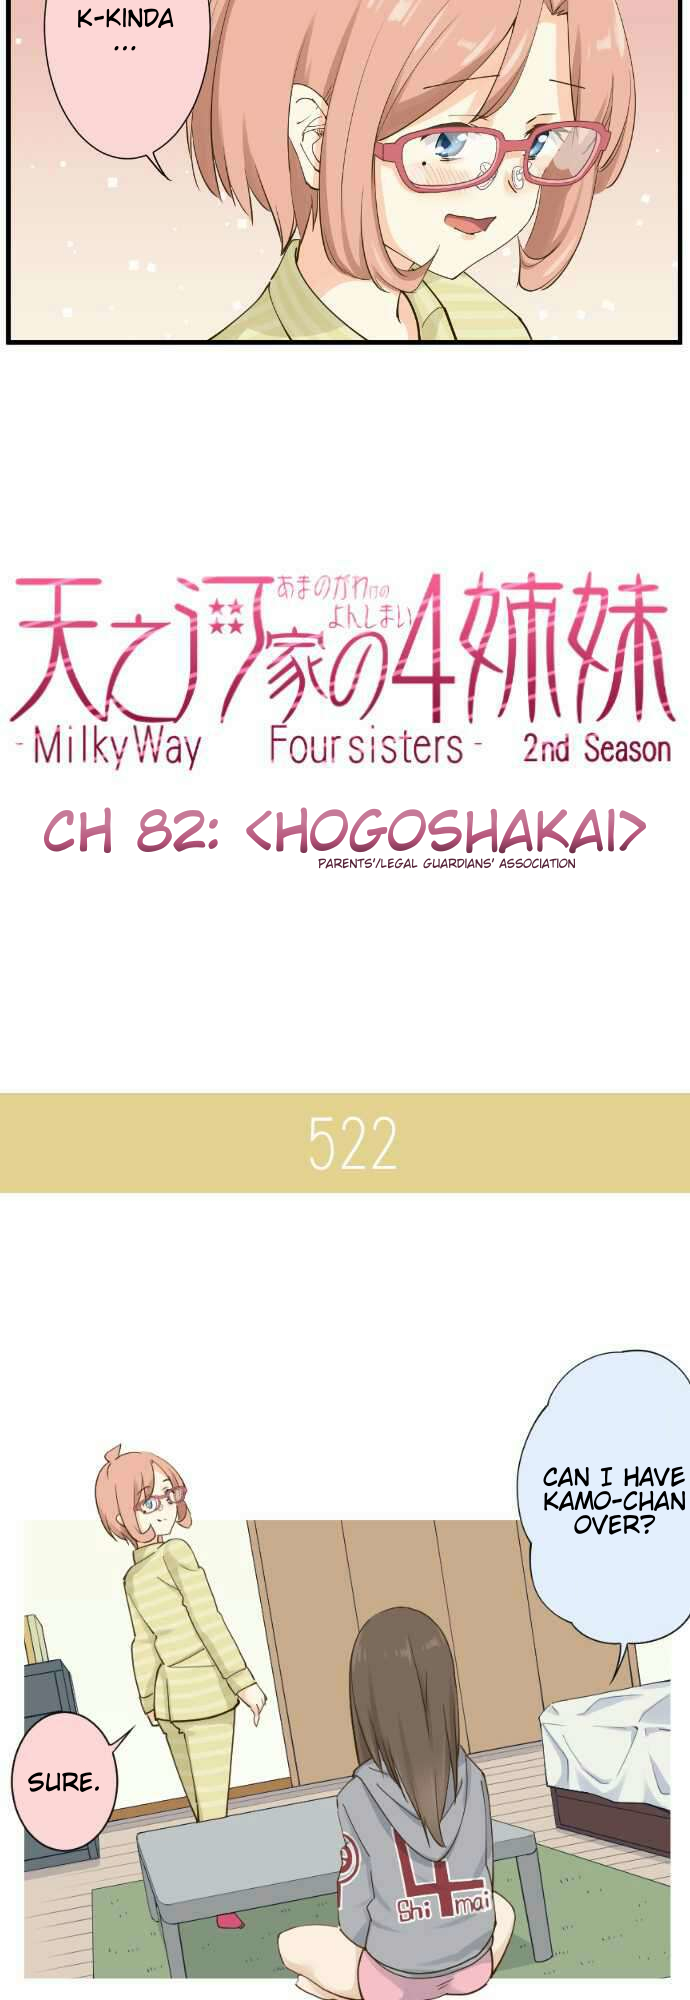 Amanogawa Ke No Yon Shimai Ch. 82 Hogoshakai